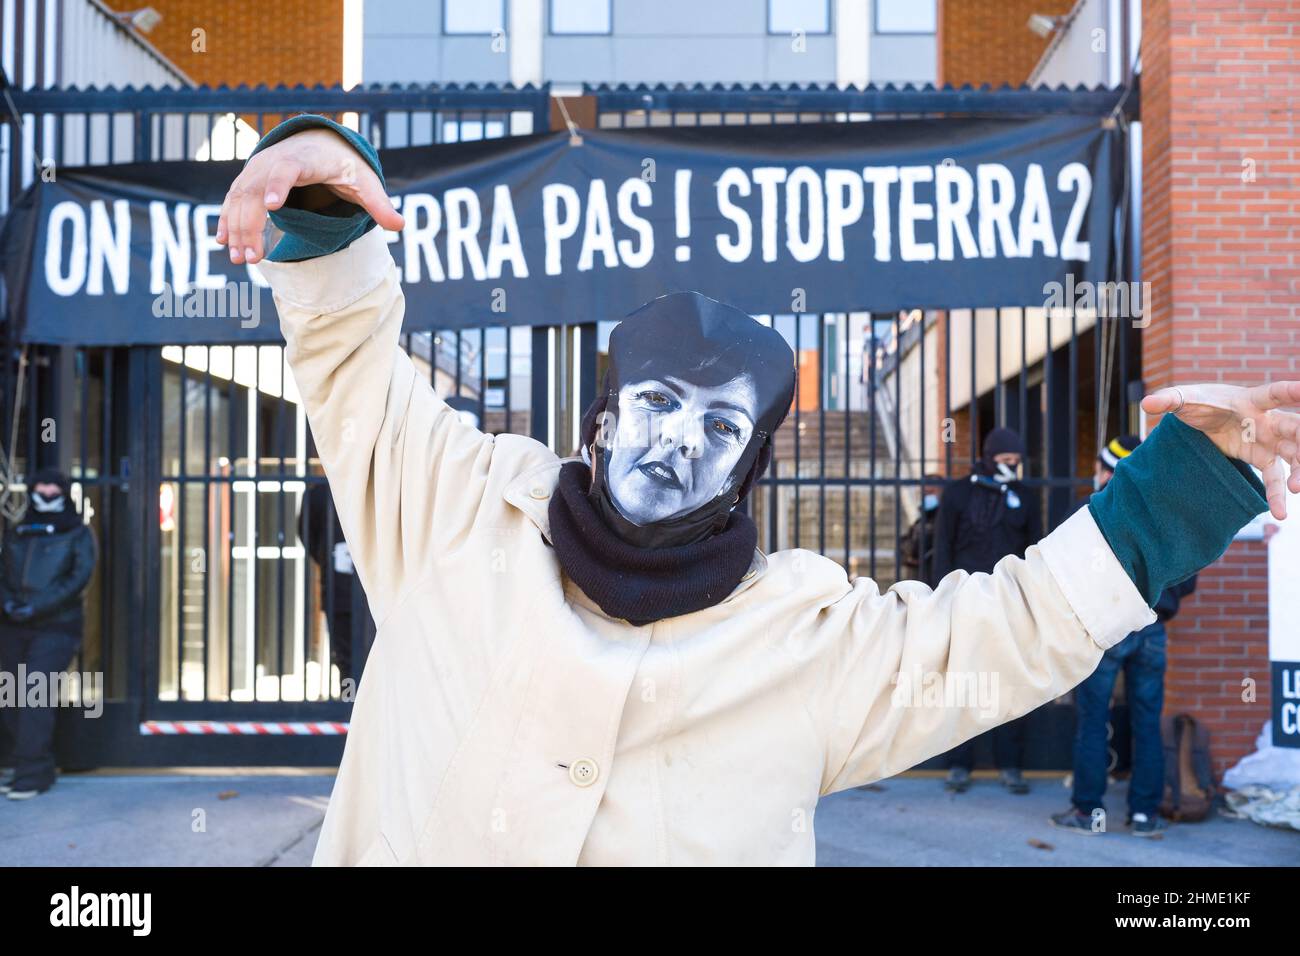 France, Toulouse, 2022-02-09. Une femme porte un masque au visuel de Carole  Delga, Presidente du conseil regional d Occitanie, devant la banderole, On  ne se terra pas ! StopTerra2. Action Stop Terra